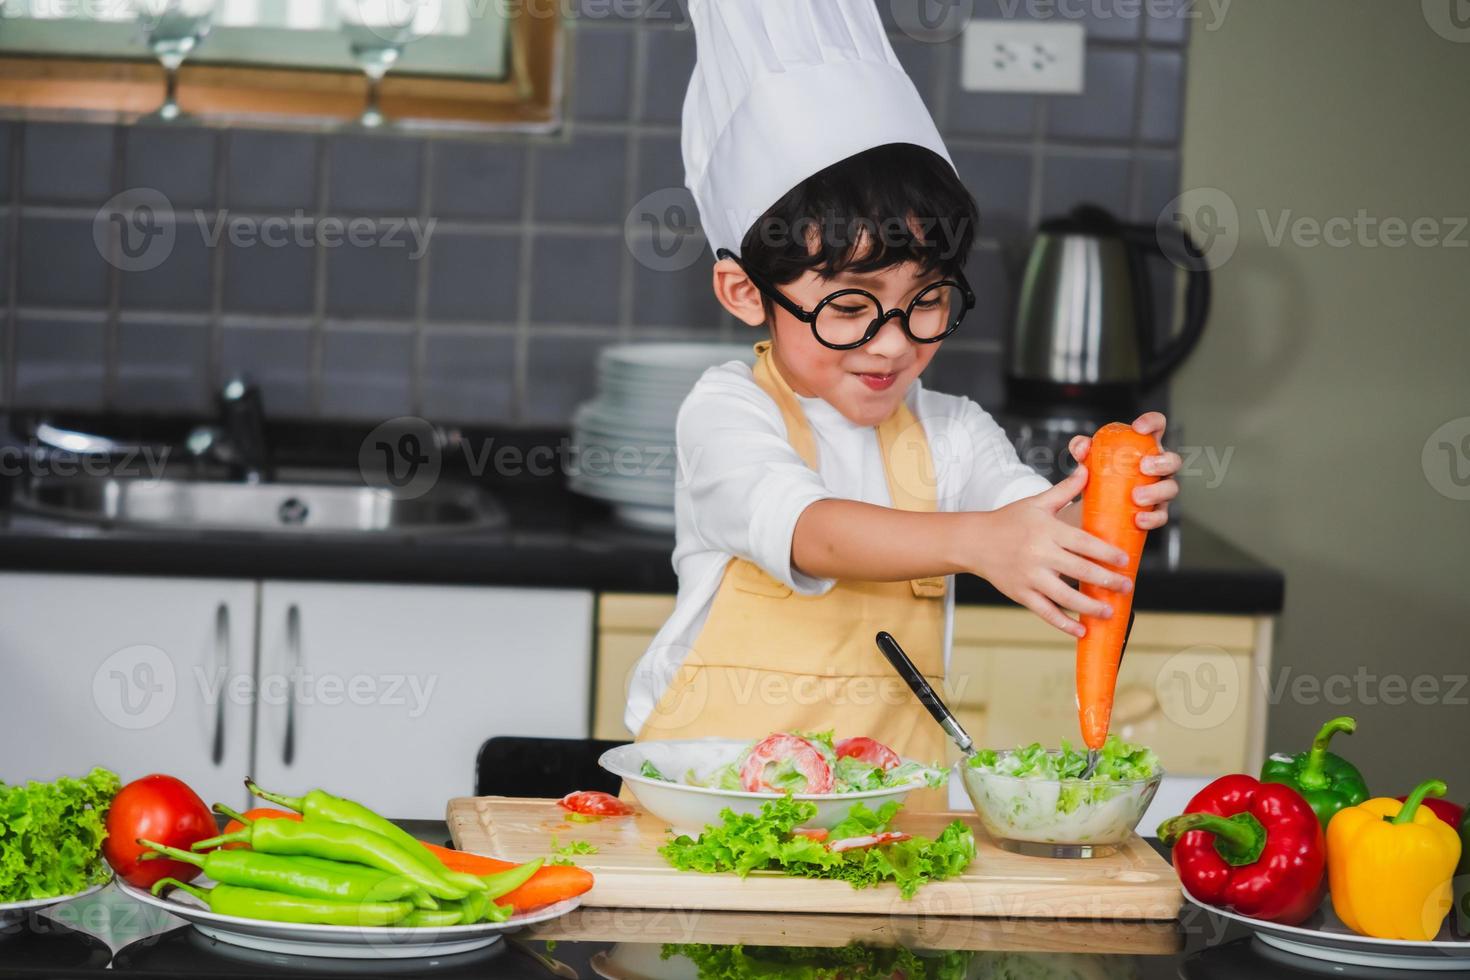 filho de menino asiático cozinhando salada de comida holdind colher de madeira com vegetais segurando tomates e cenouras, pimentões no prato para família feliz cozinhar comida prazer estilo de vida foto